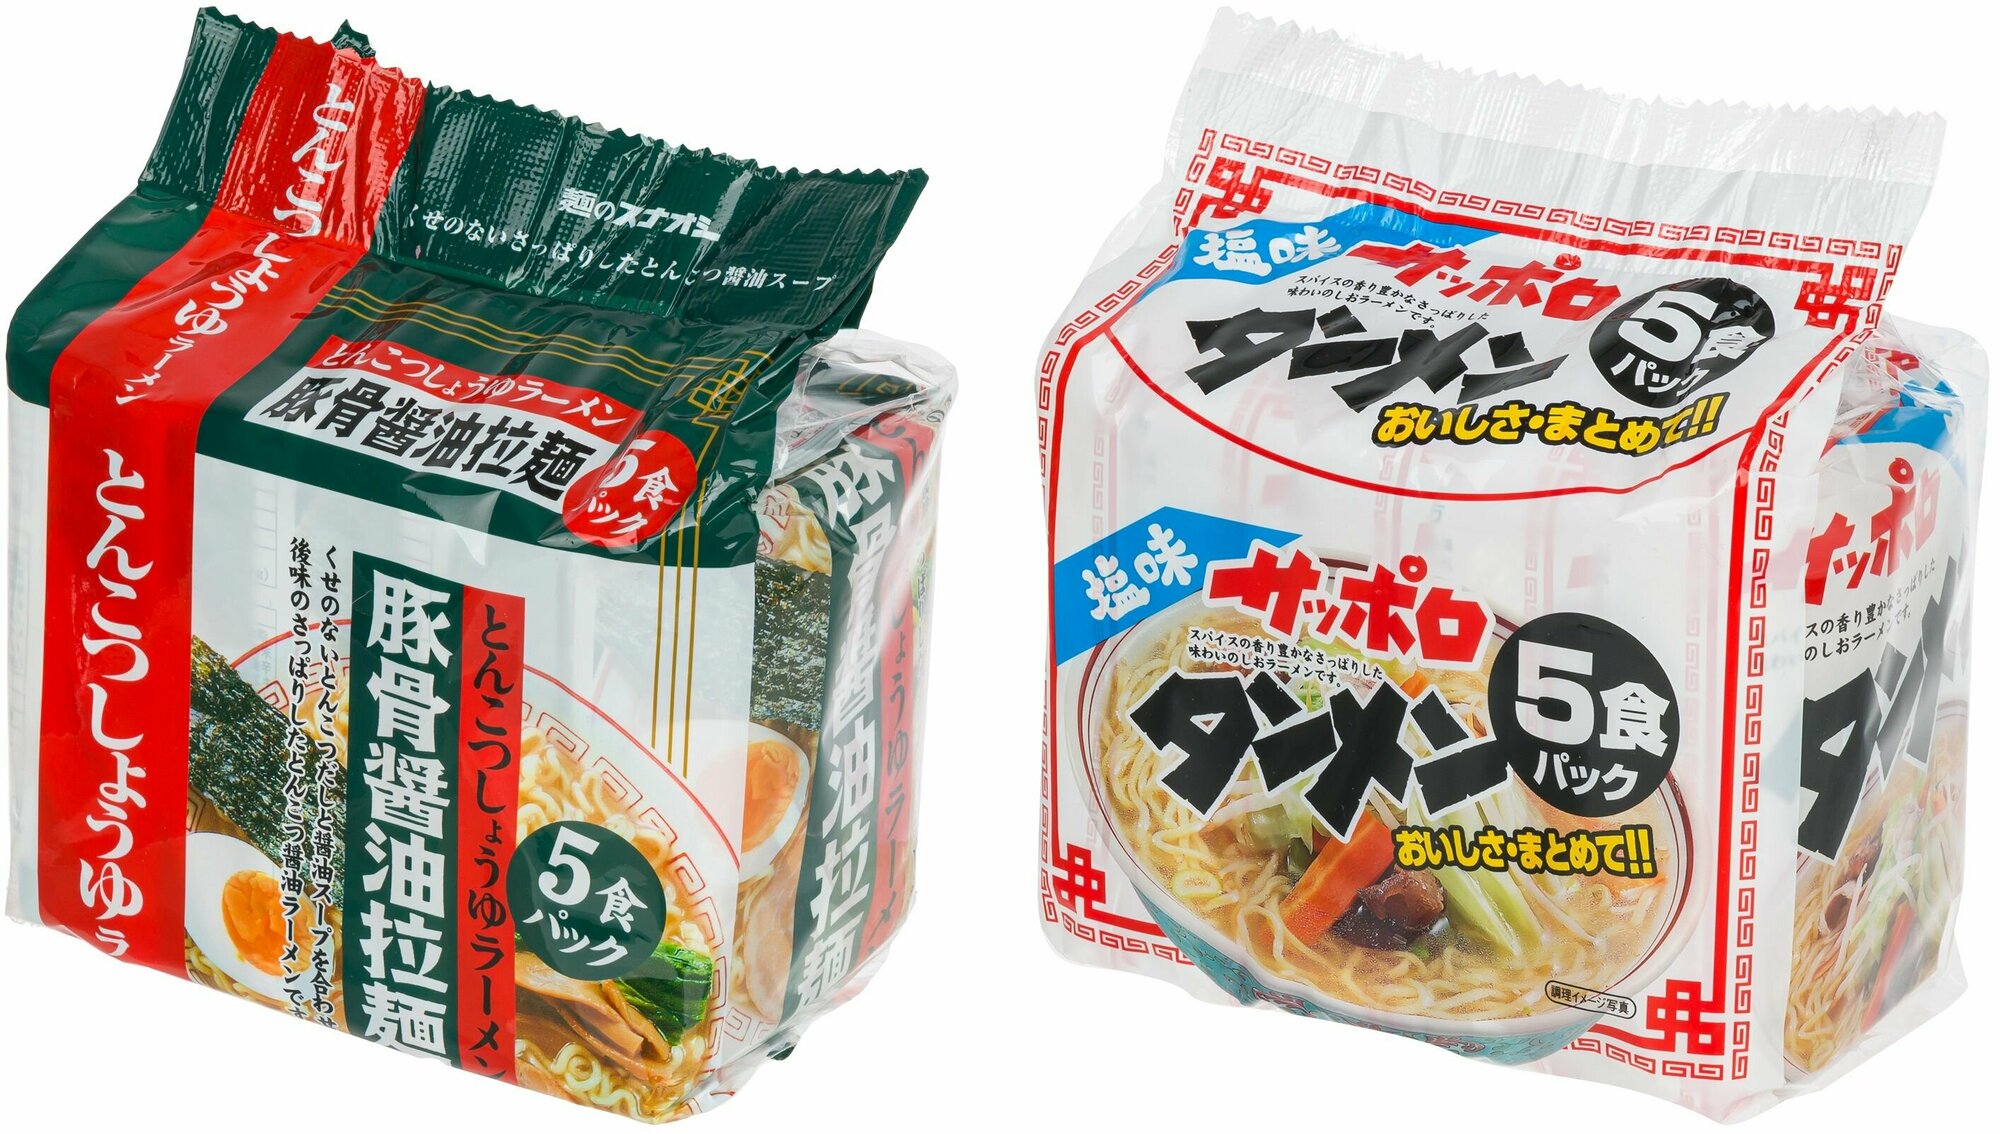 Саппоро-рамен на свином бульоне с соевым соусом и с солью (5 пакетиков в пачке), 2 штуки в наборе, SUNAOSHI, Япония